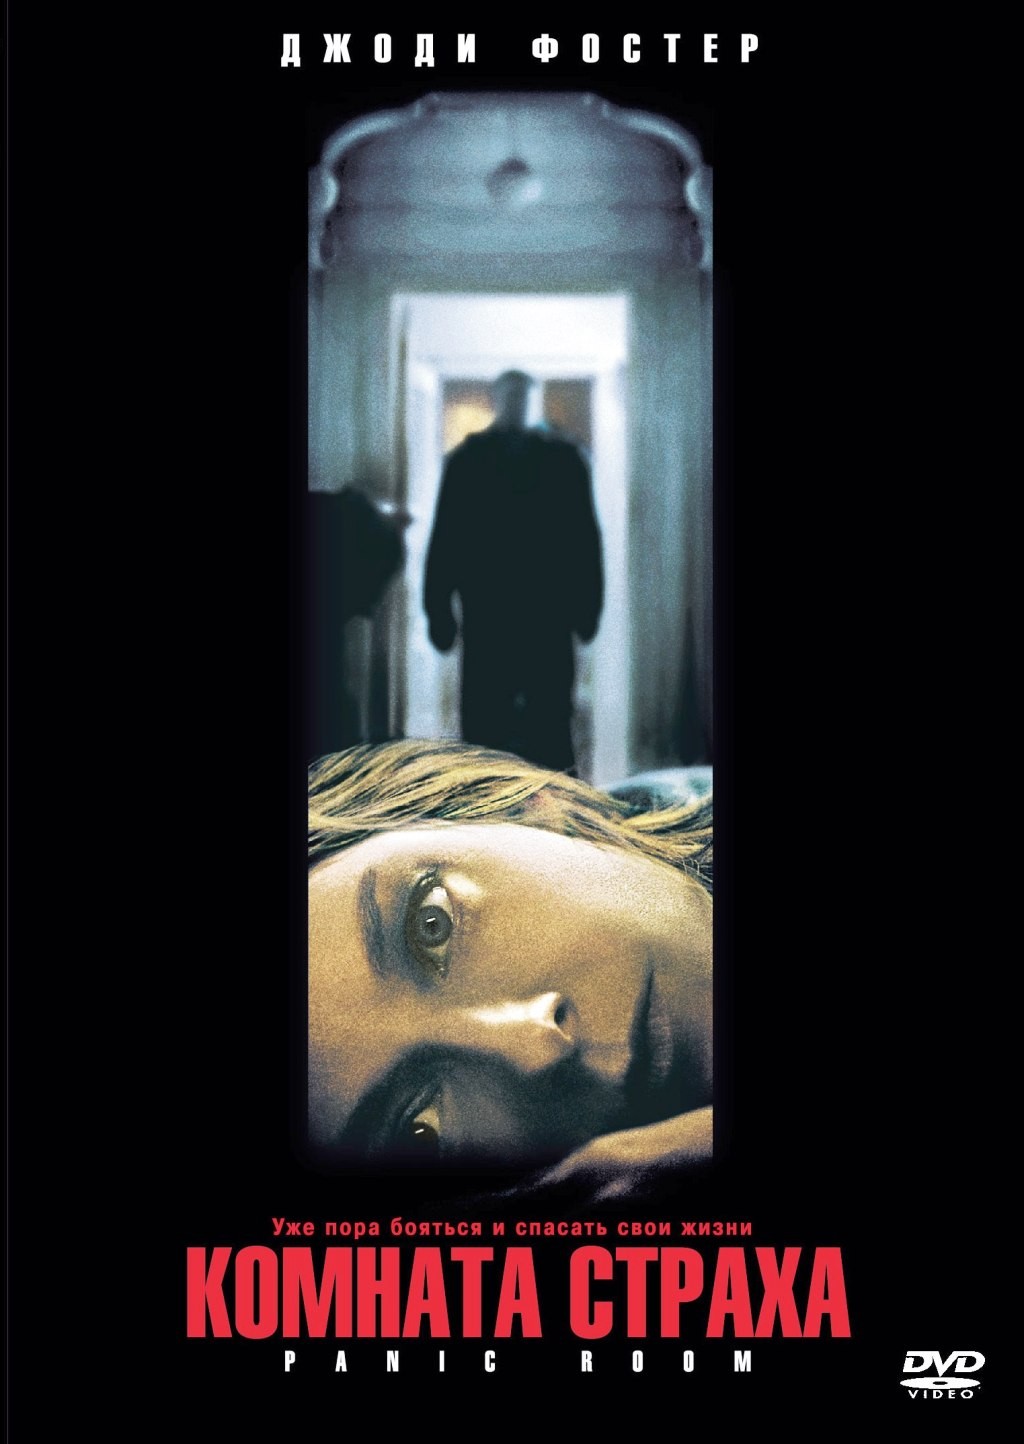 Комната страха (DVD)